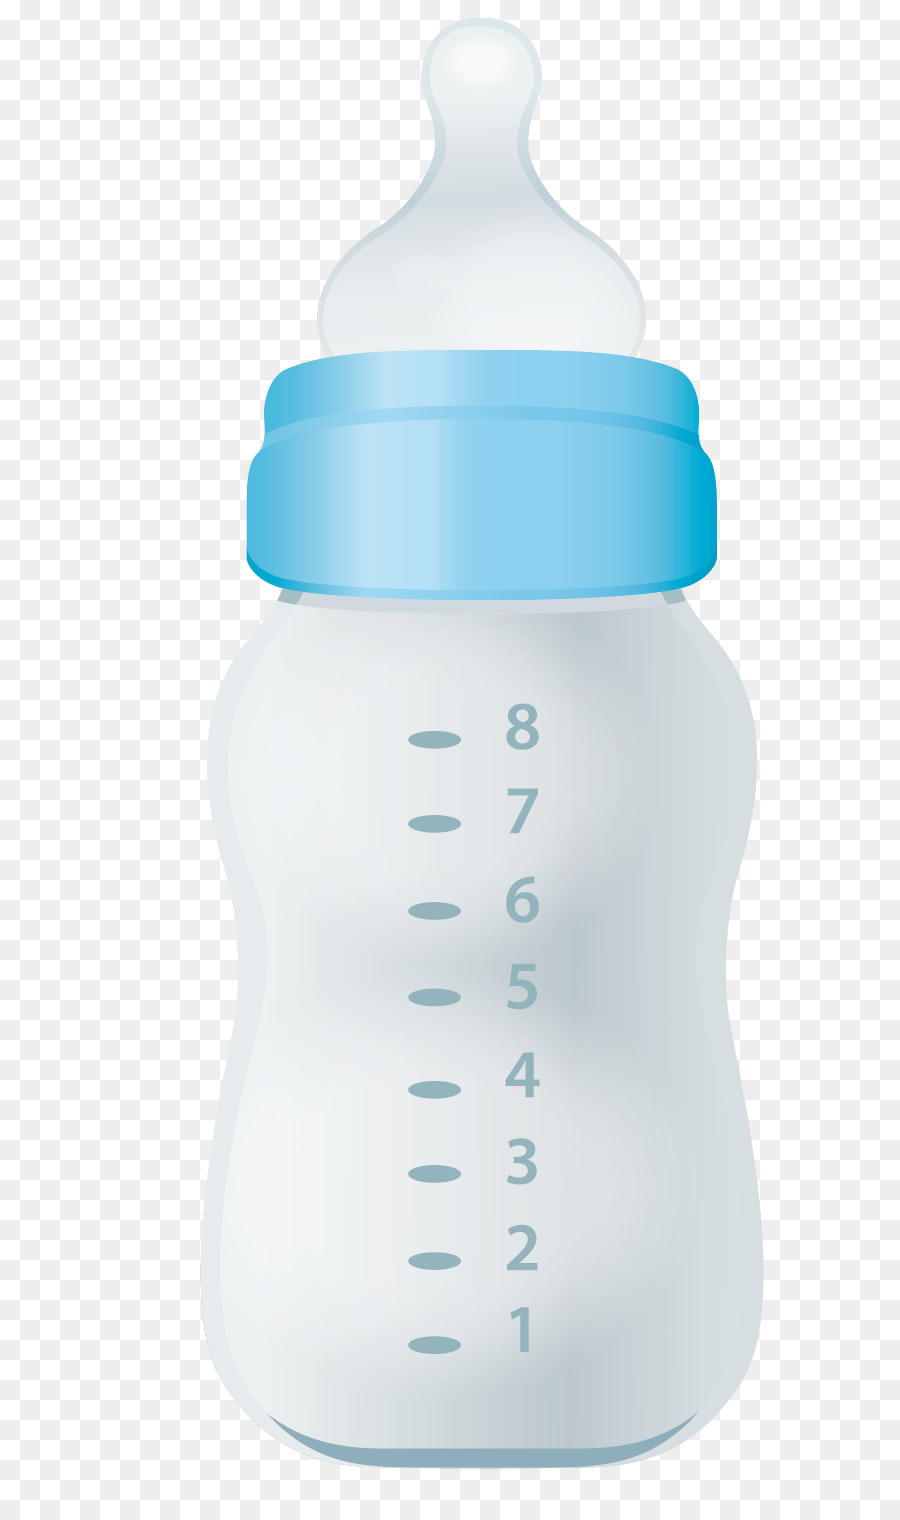 Baby Bottles Milk Plastic bottle - Bottle png vector material png download - 700*1501 - Free Transparent  png Download.